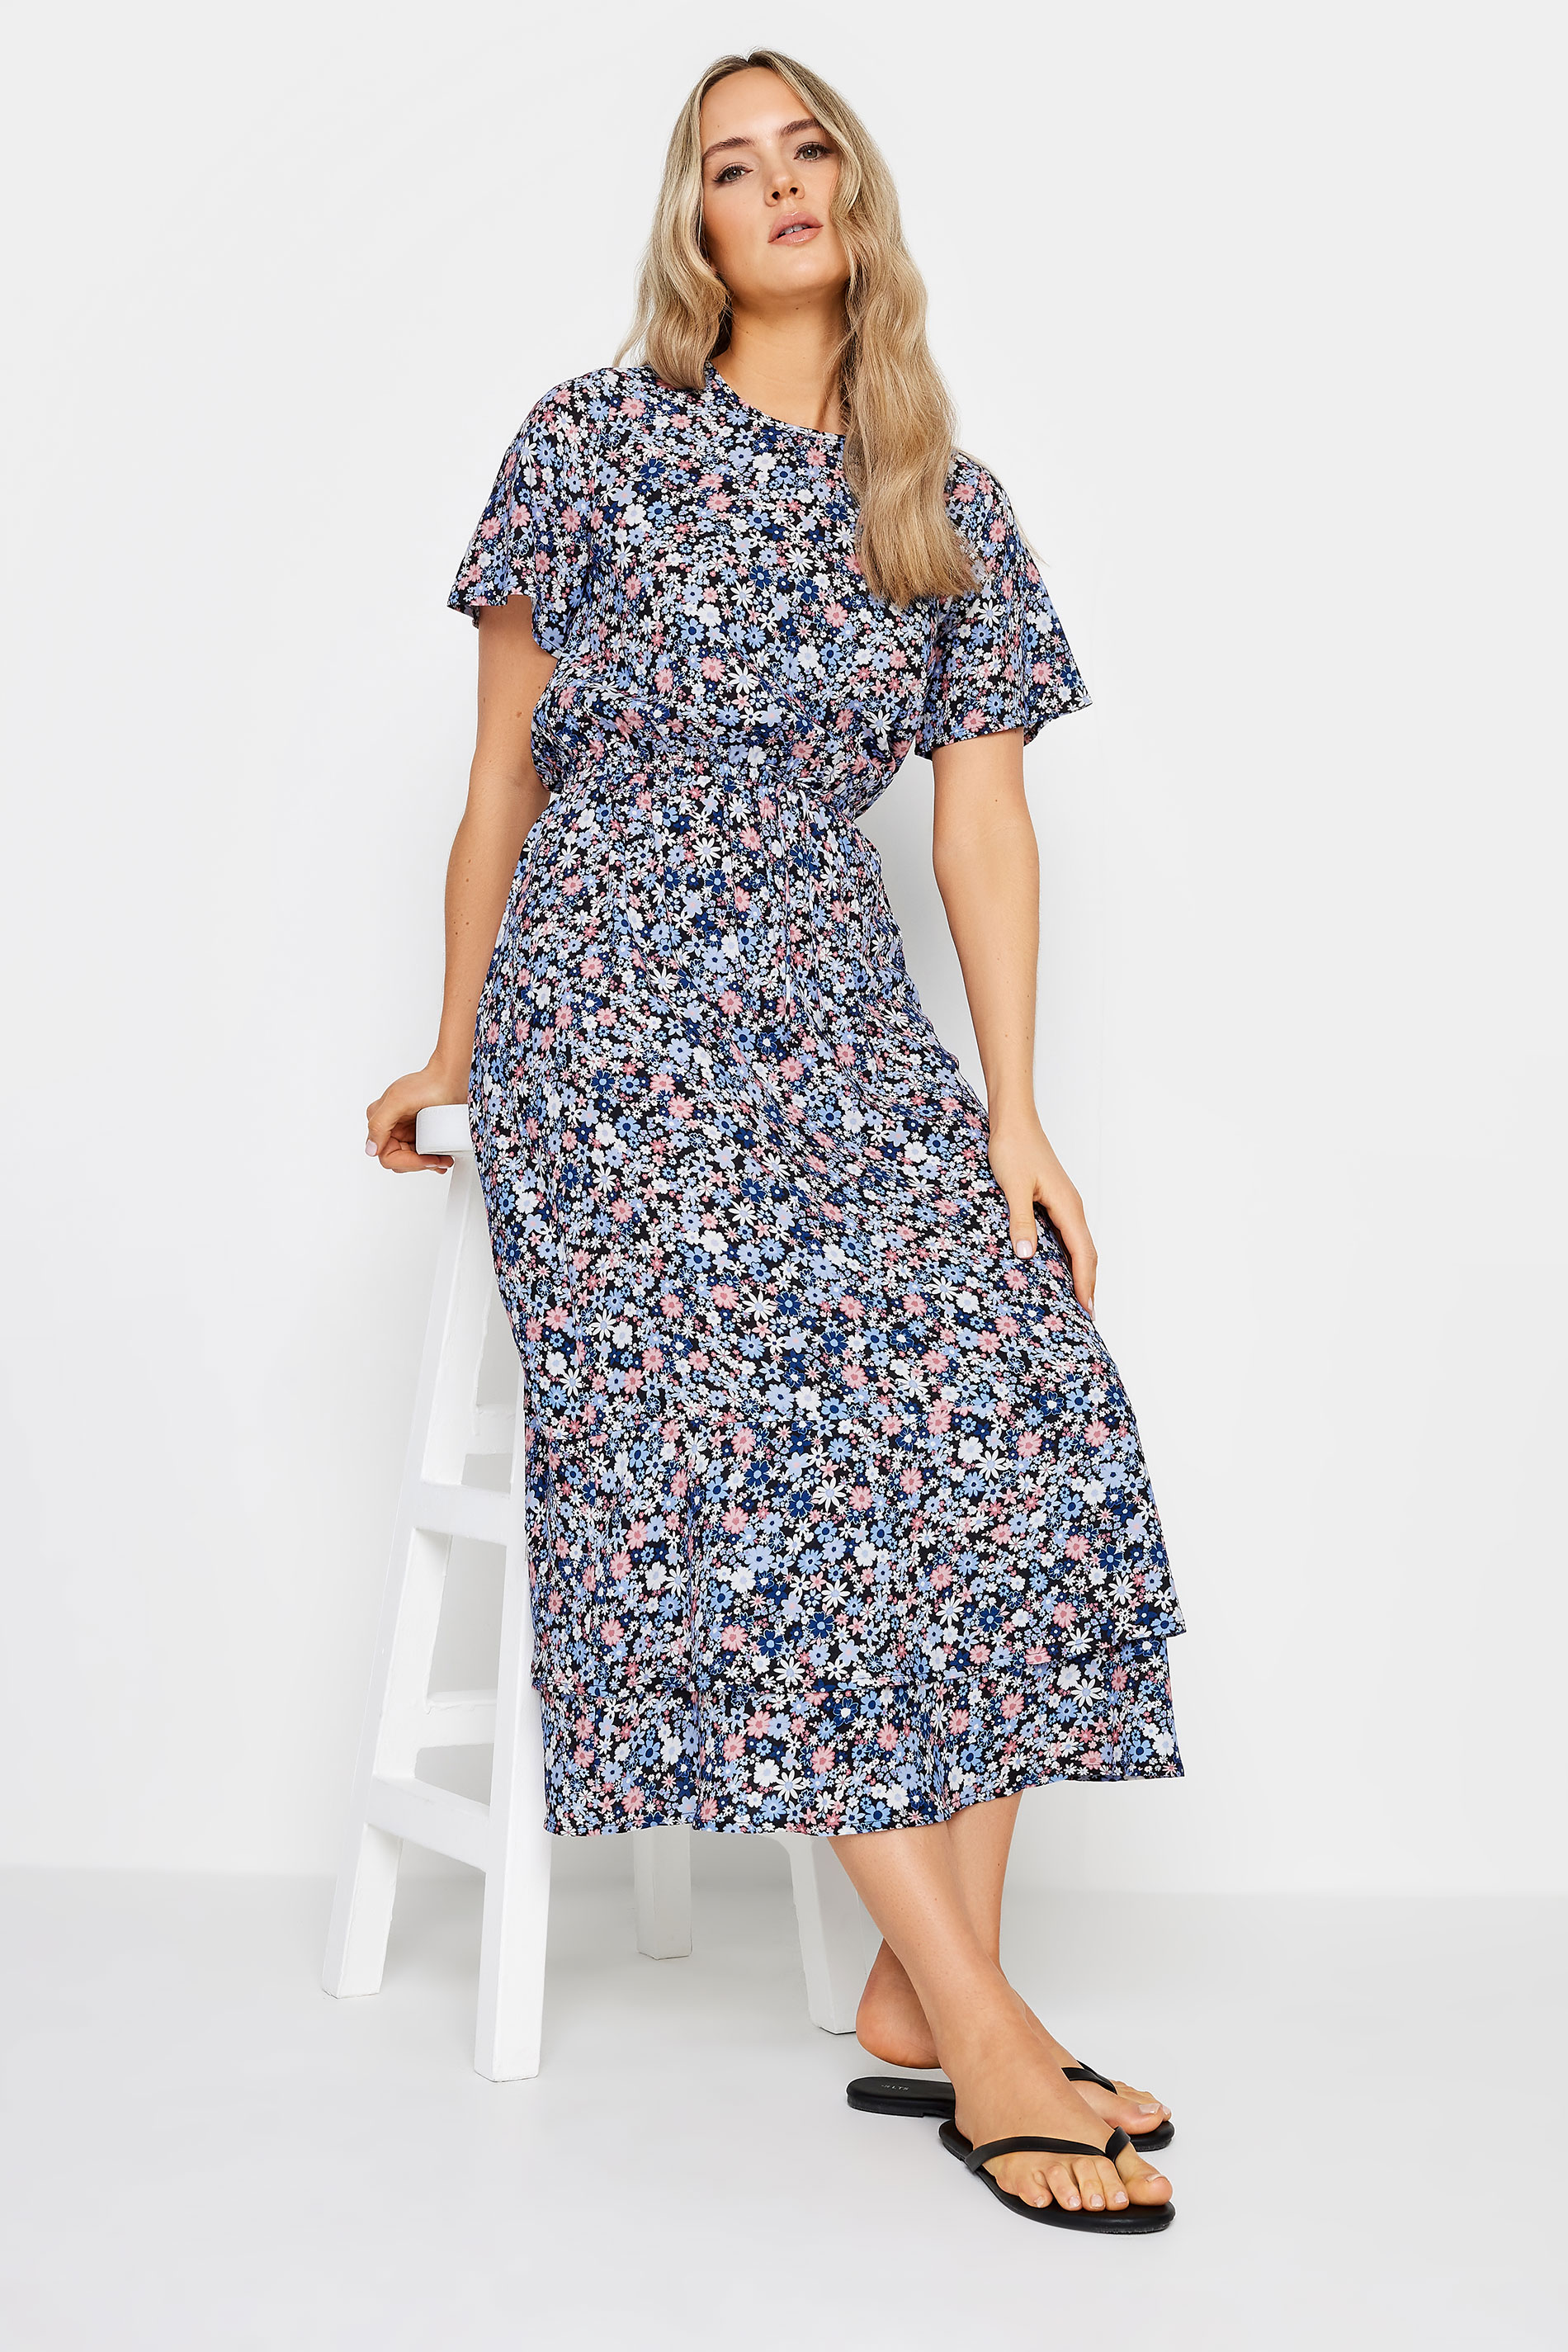 LTS Tall Womens Blue Floral Print Tie Waist Midi Dress | Long Tall Sally 2